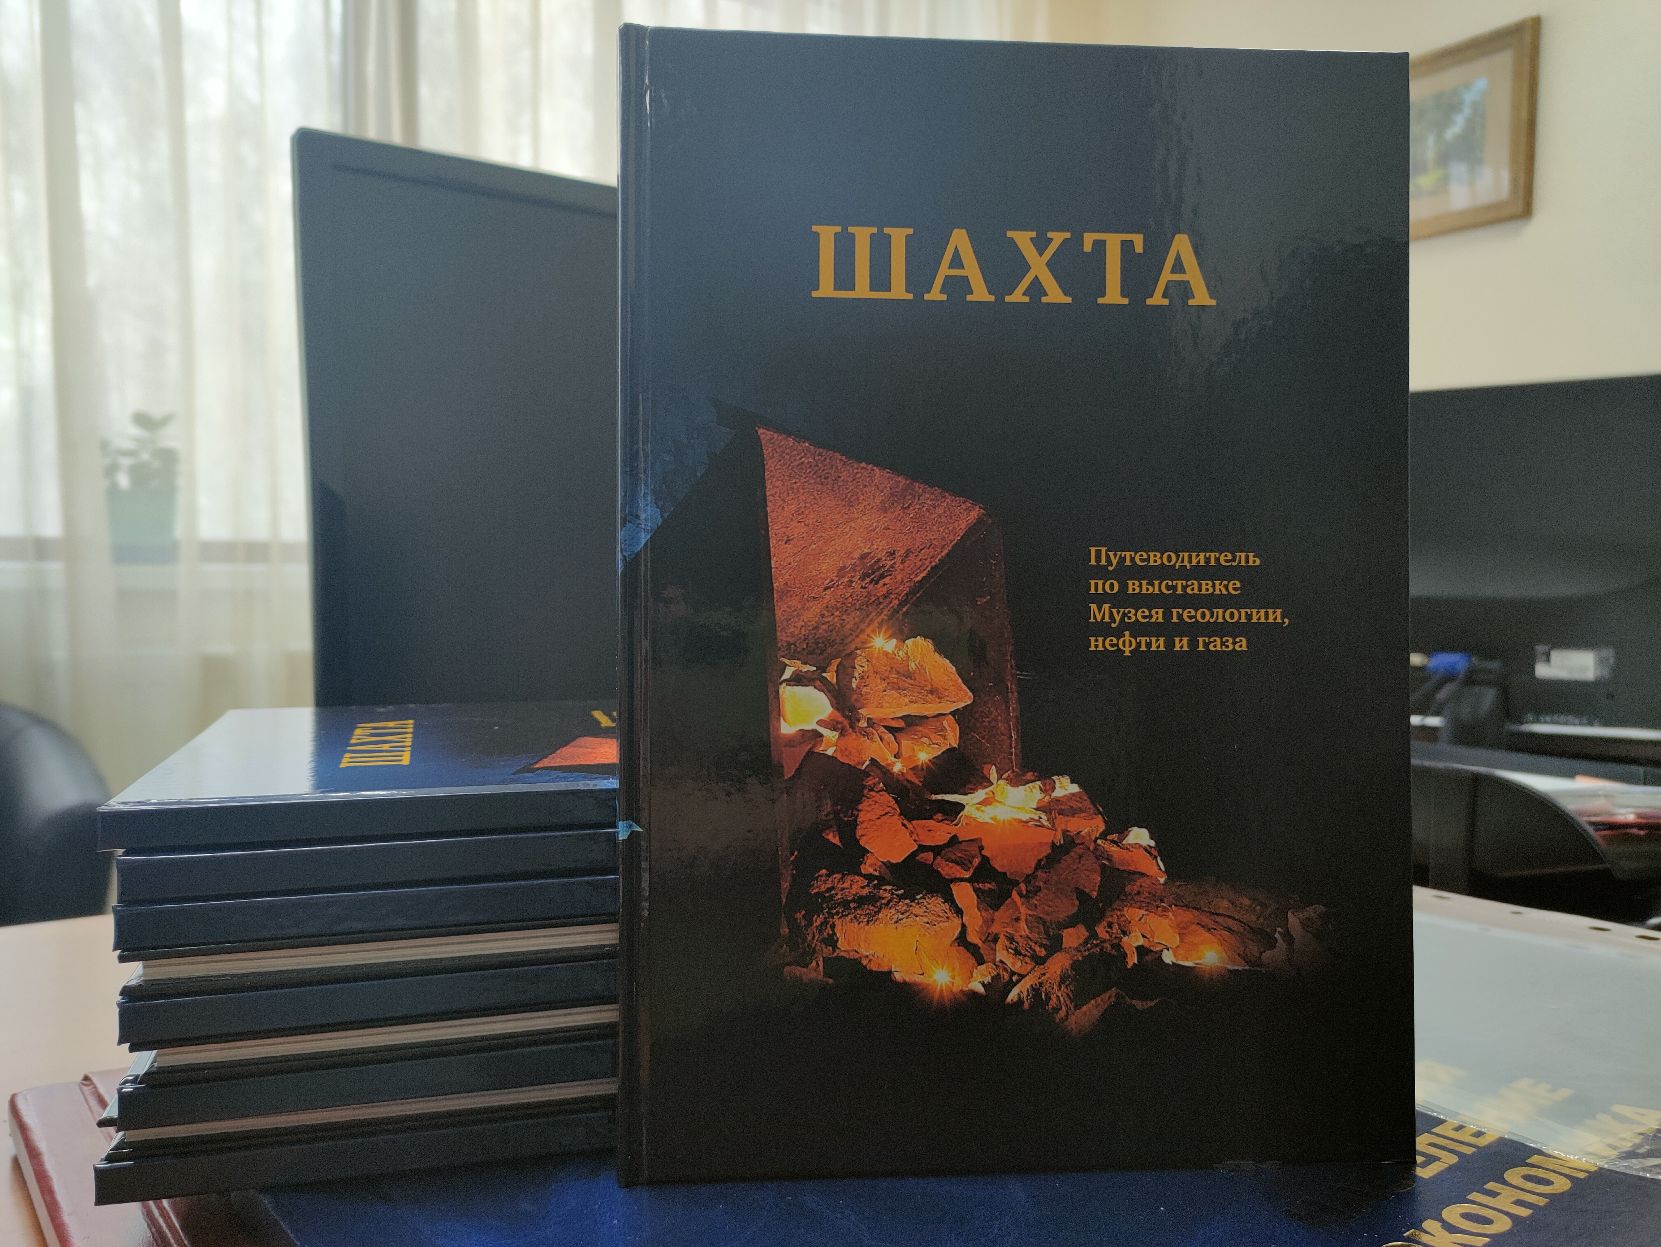 Музей геологии, нефти и газа выпустил подробный путеводитель по выставке «Шахта»